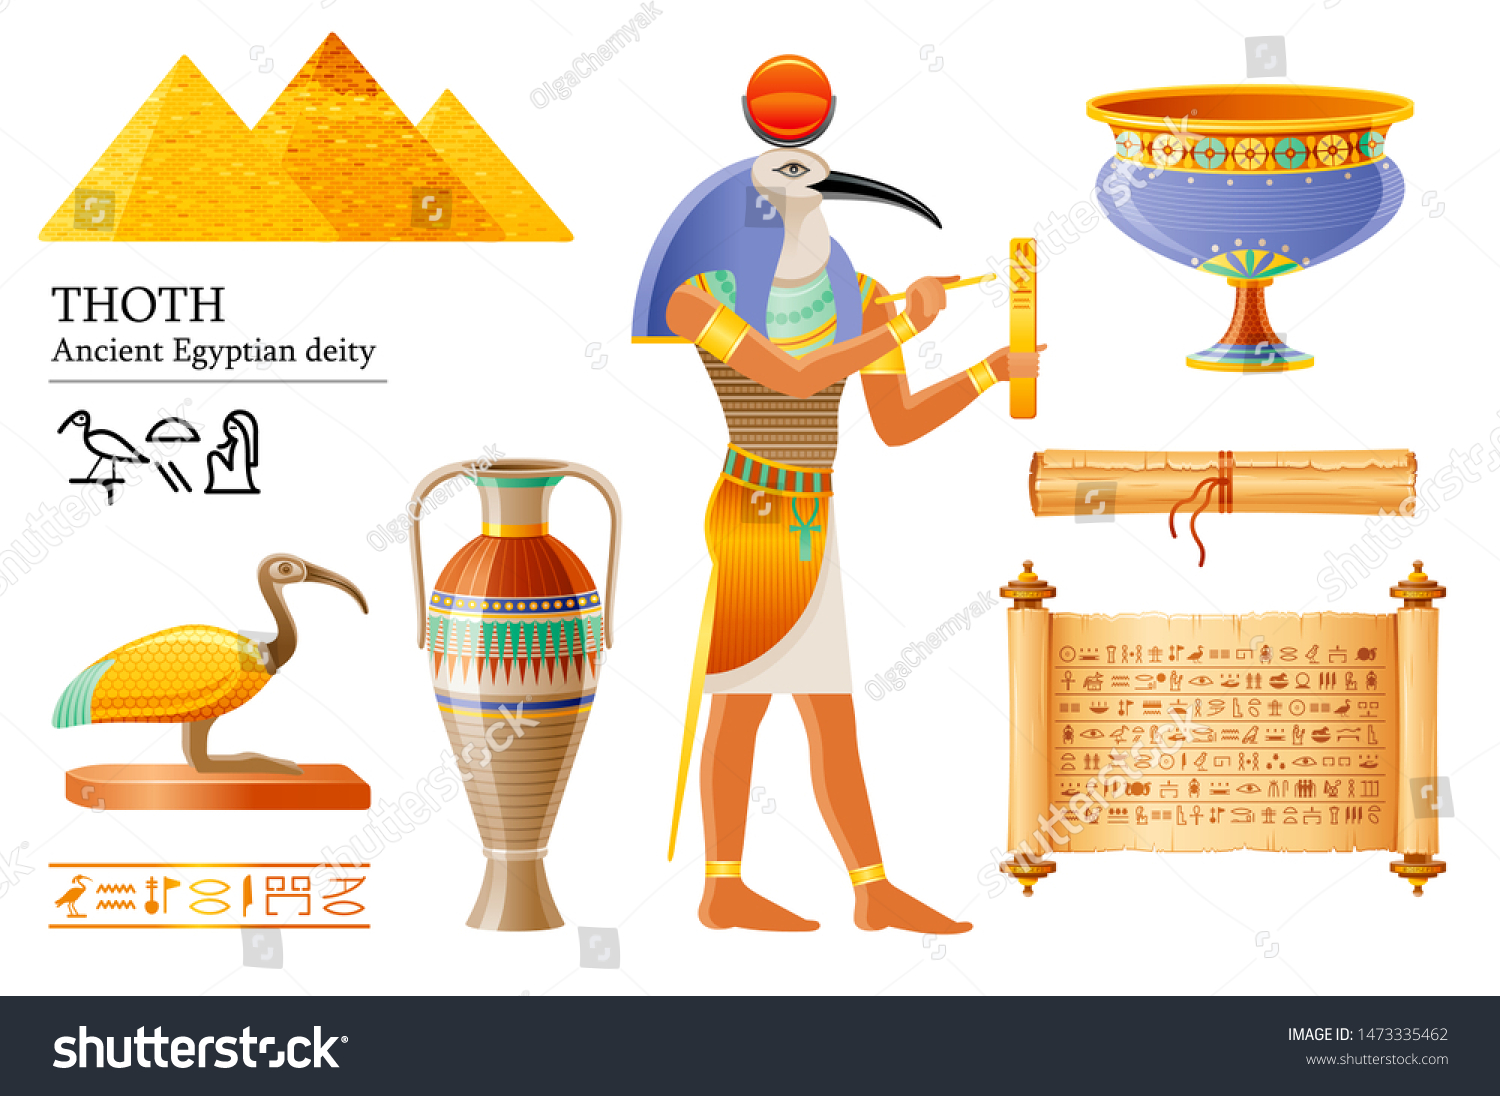 古代エジプトのトース 知恵の神 絵文字の書き方 イビの鳥の神 パピルスの巻物 花瓶 鉢 3dカートーンのベクターイラスト エジプトの古い壁画の絵のアイコン 白い背景に分離型 のベクター画像素材 ロイヤリティフリー